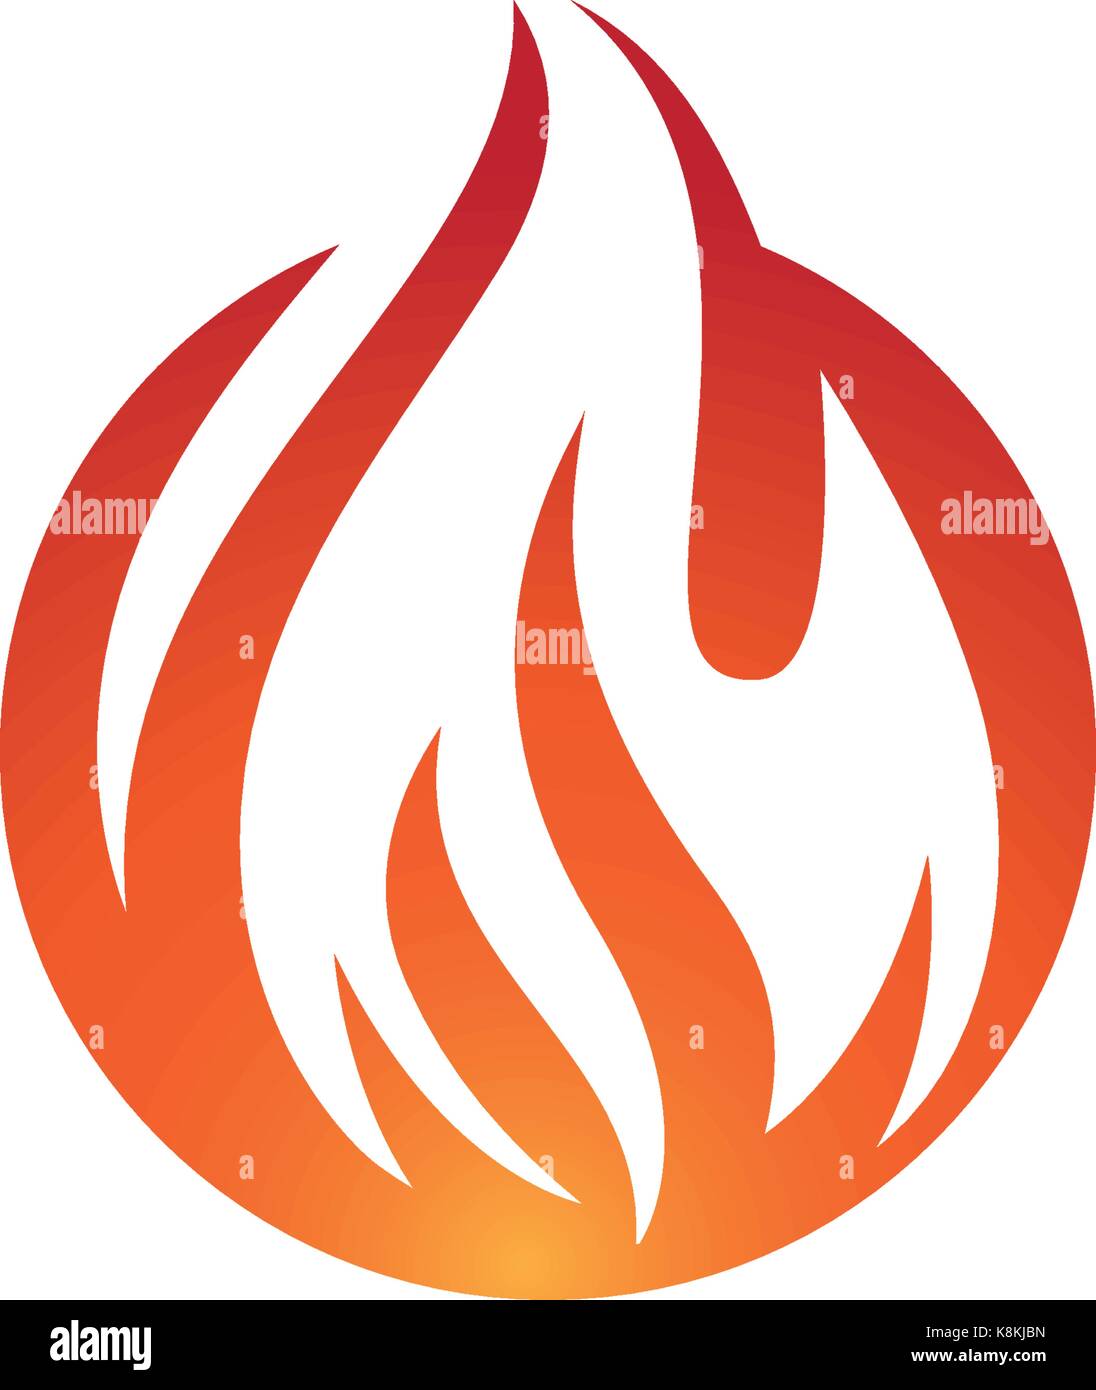 Feuer Flamme Logo Vorlage Vektor Icon Öl-, Gas- und Energiewirtschaft Logokonzept Stock Vektor